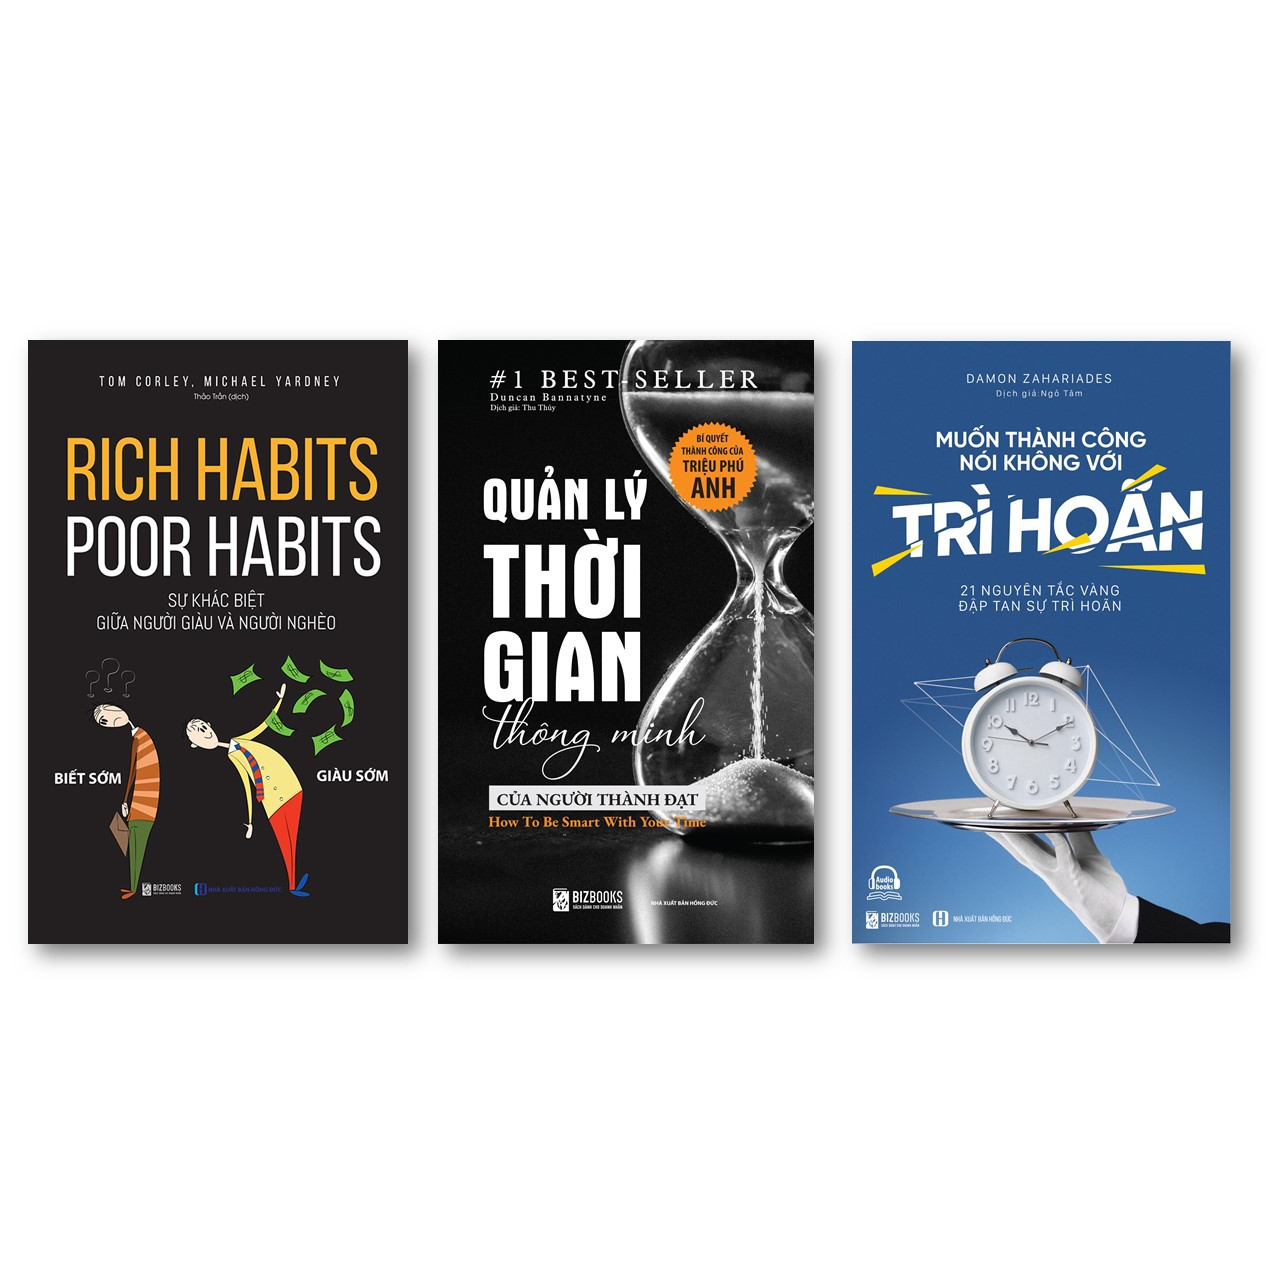 Bộ 3 cuốn sách kỹ năng mềm độc nhất mọi thời đại NT"Rich habits, poor habits: Sự khác biệt giữa người giàu và người nghèo ,Quản lý thời gian thông minh của người thành đạt: Bí quyết thành công của triệu phú Anh , Muốn thành công nói không với trì hoãn – 2